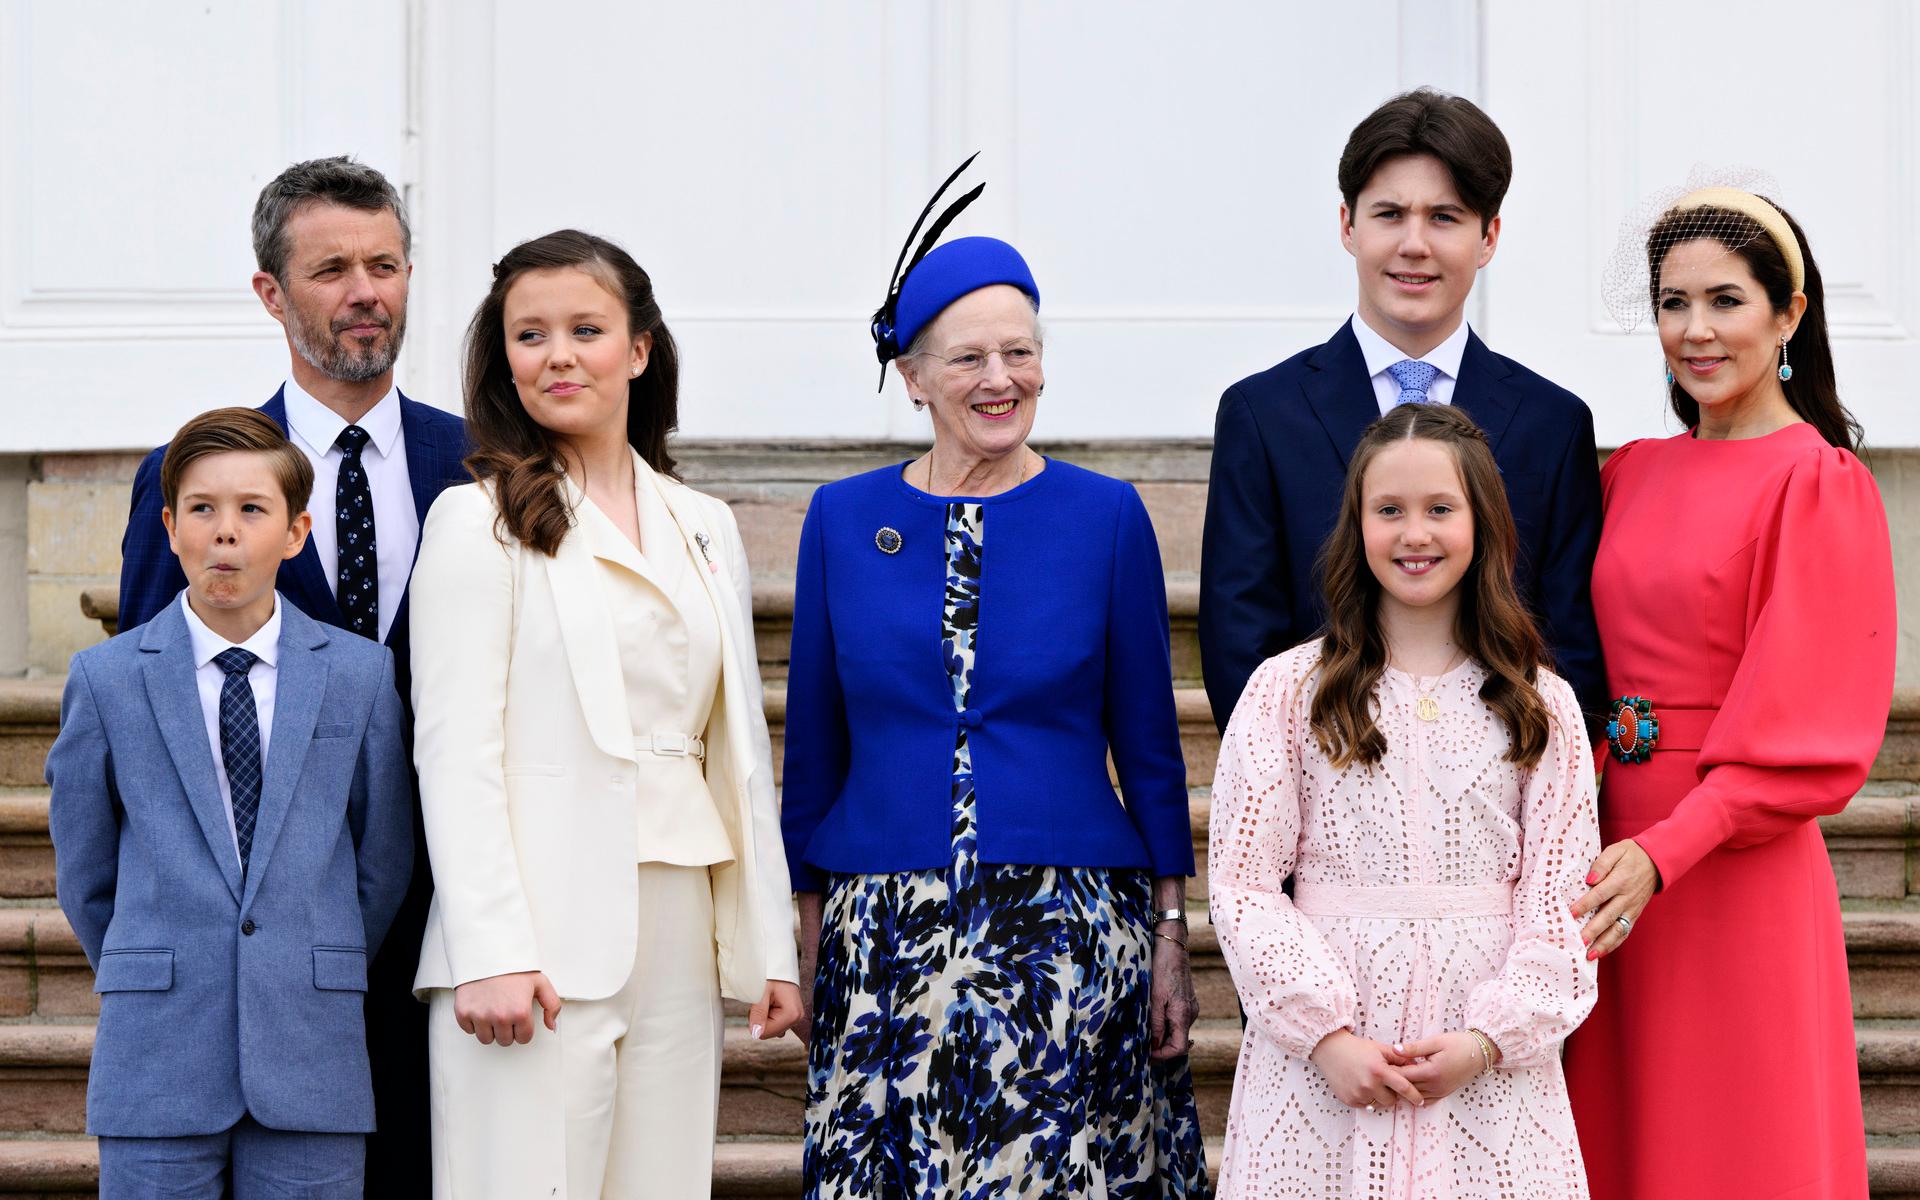 16-årige prins Christian, näst längst till höger på bilden, tillsammans med sin familj. Han är en av Helufsholms elever och kronprinsparet, Frederik (näst längst till vänster) och Mary (längst till höger), gick i veckan ut med en kommentar om de nya uppgifterna om skolan. ”Hjärtskärande” skriver de bland annat och att de som föräldrar förväntar sig förändring. 